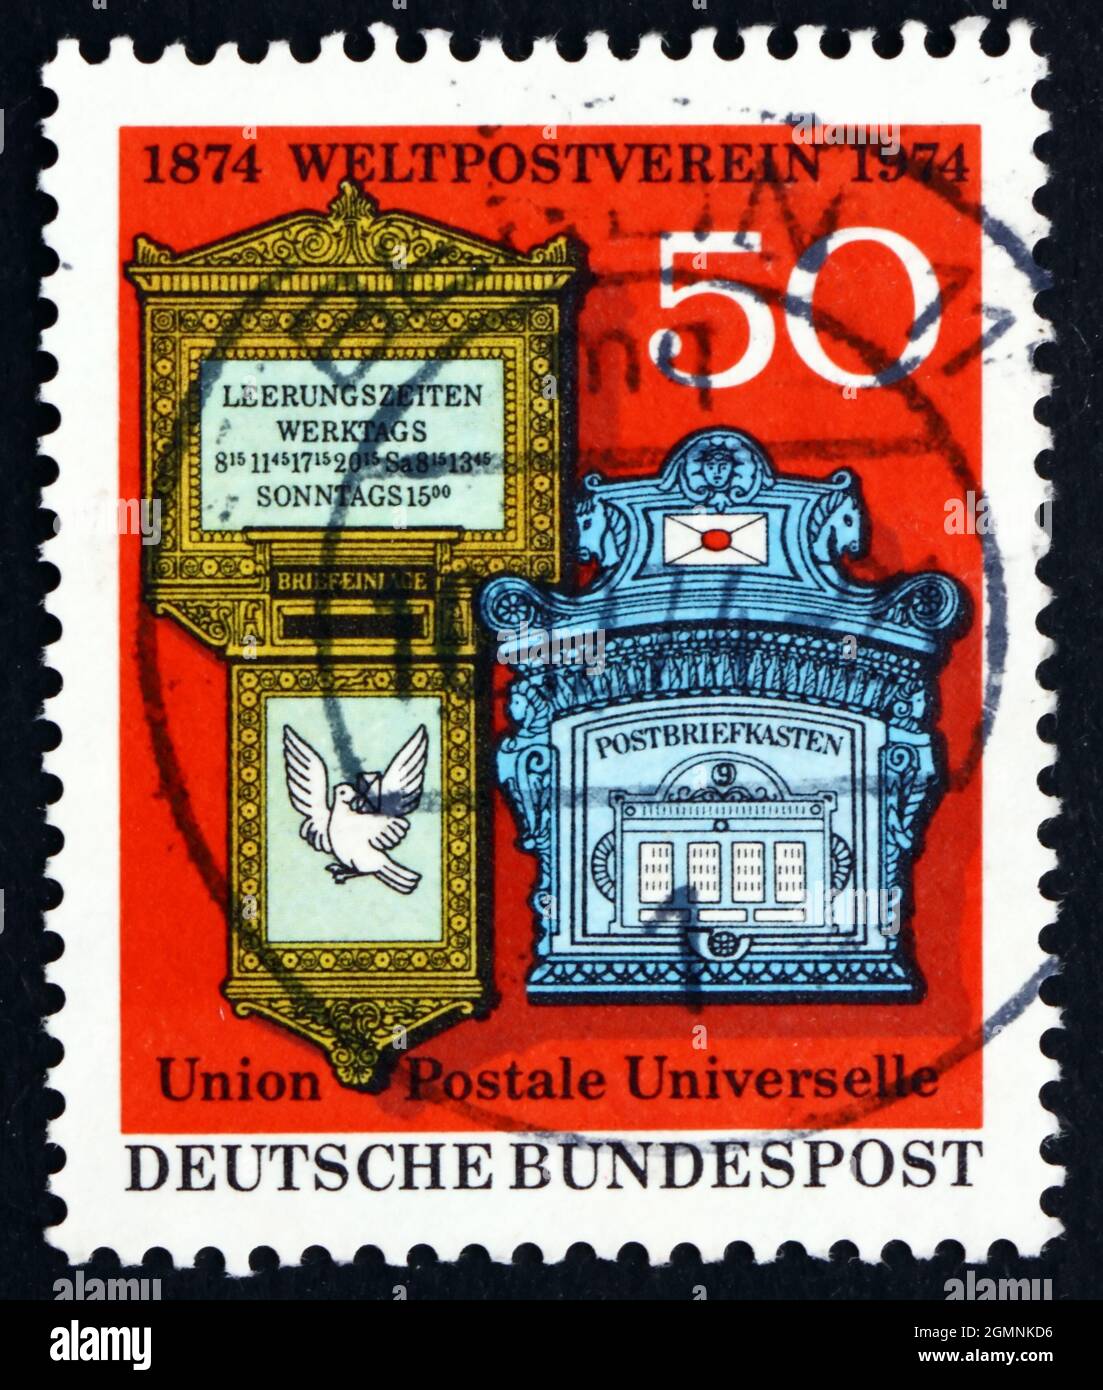 GERMANIA - CIRCA 1974: Un francobollo stampato in Germania mostra caselle postali svizzere e tedesche del XIX secolo, Centenario dell'Unione postale universale, circa 1974 Foto Stock